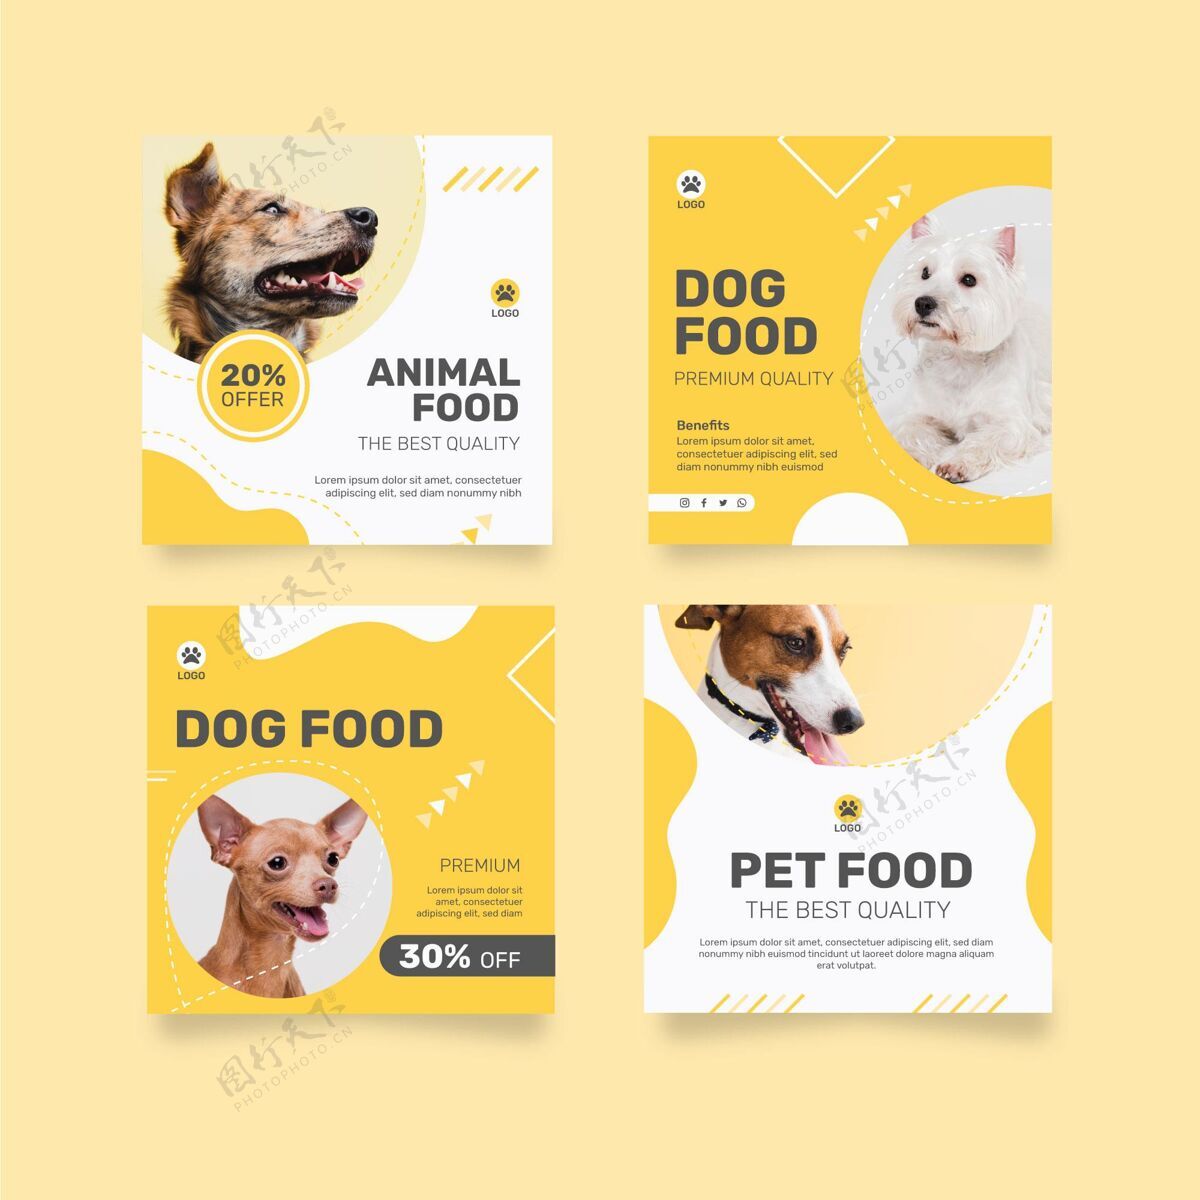 网站Instagram发布了一个关于狗的动物食品的集合食品狗狗